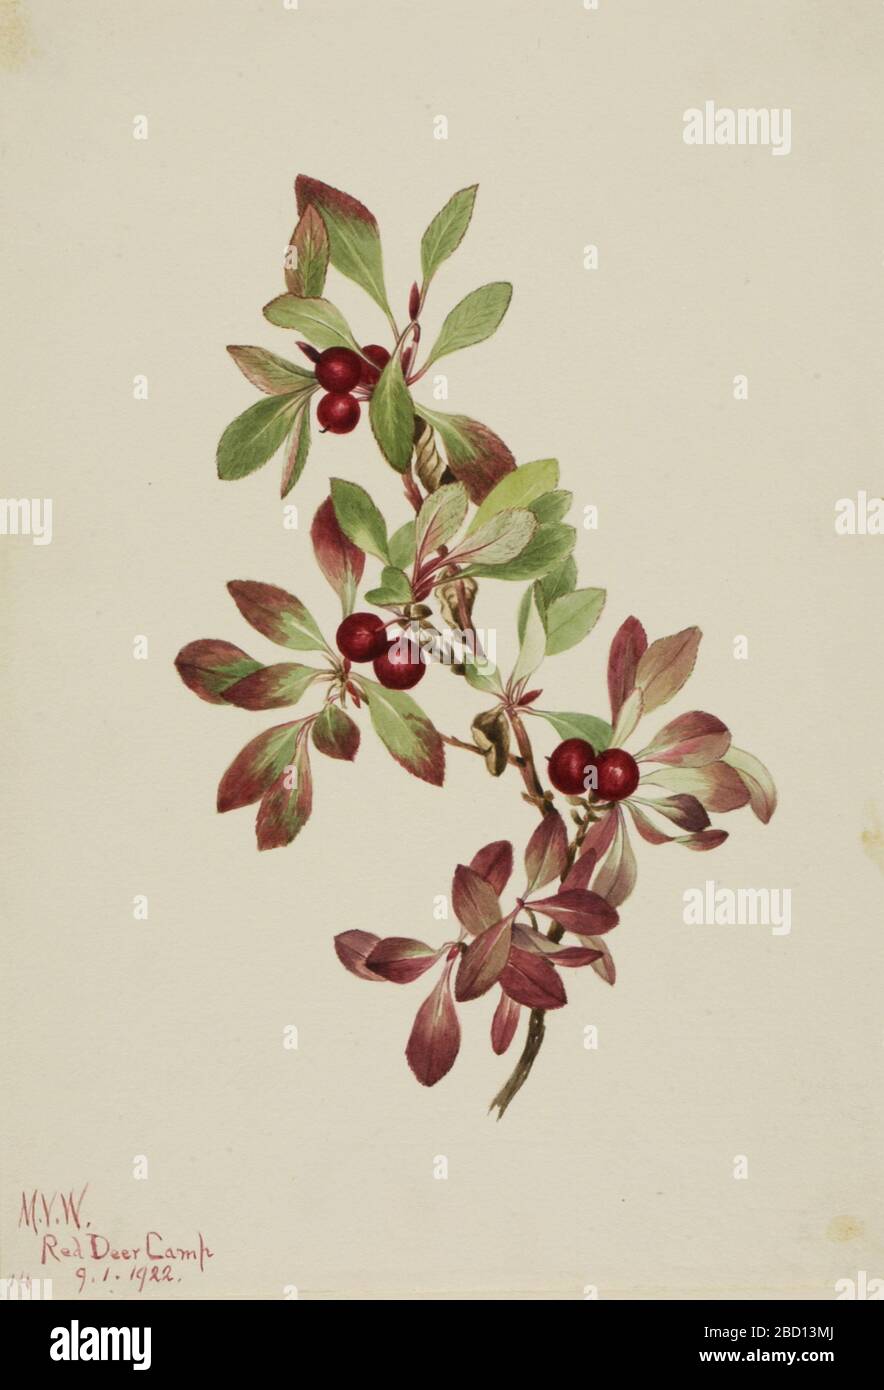 Ptarmiganberry Arctous alpina. Stock Photo